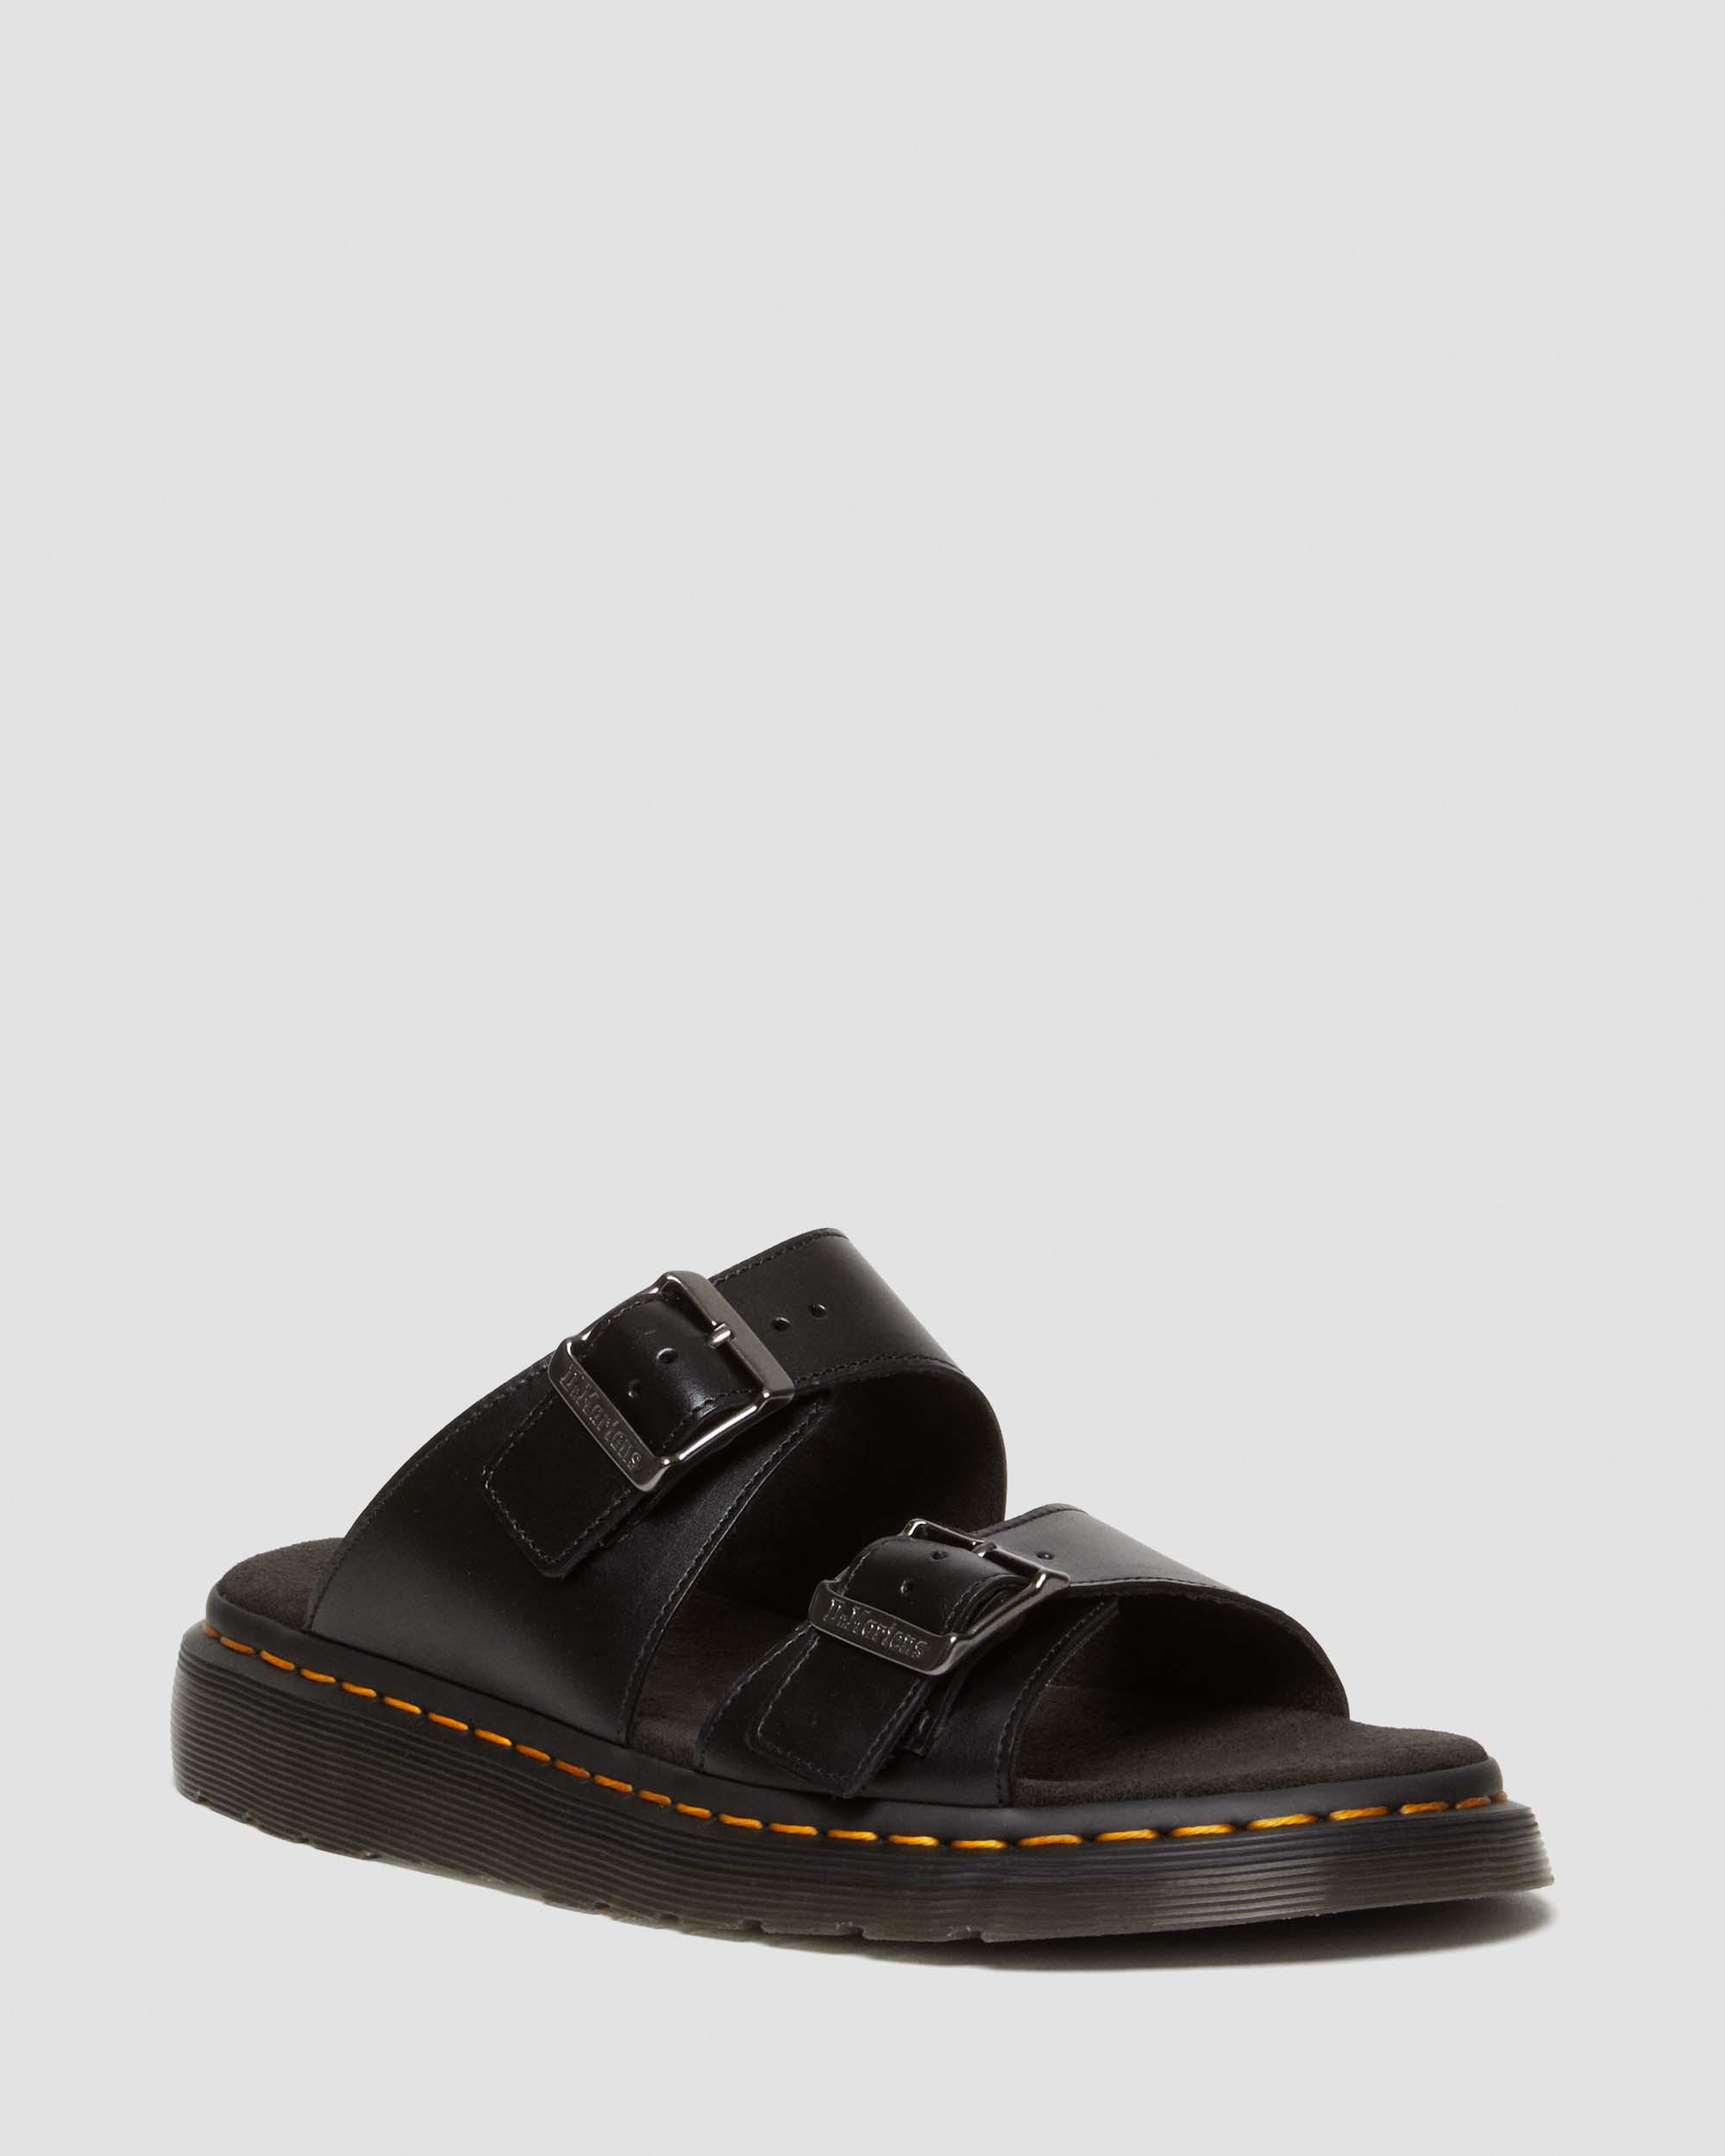 Josef Leather Buckle Slide Sandals in Black